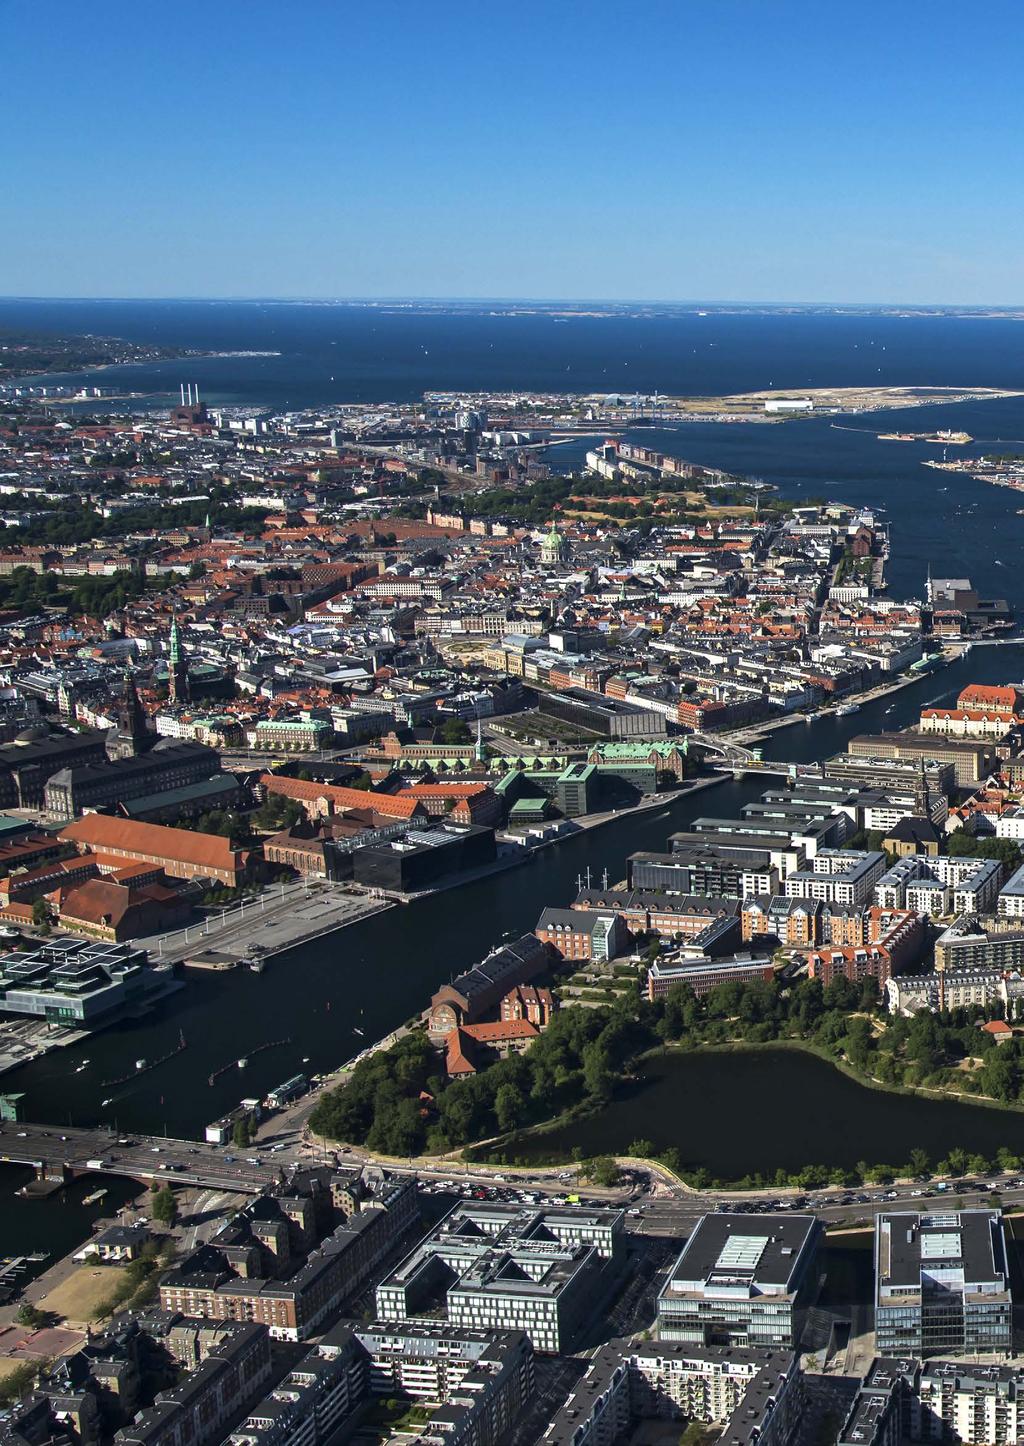 Danmarks hovedstad frem mod 2030 5 Danmarks hovedstad frem mod 2030 Regeringen ønsker, at det skal være godt og attraktivt at bo, leve og arbejde i hele landet, og at erhvervslivet alle steder skal